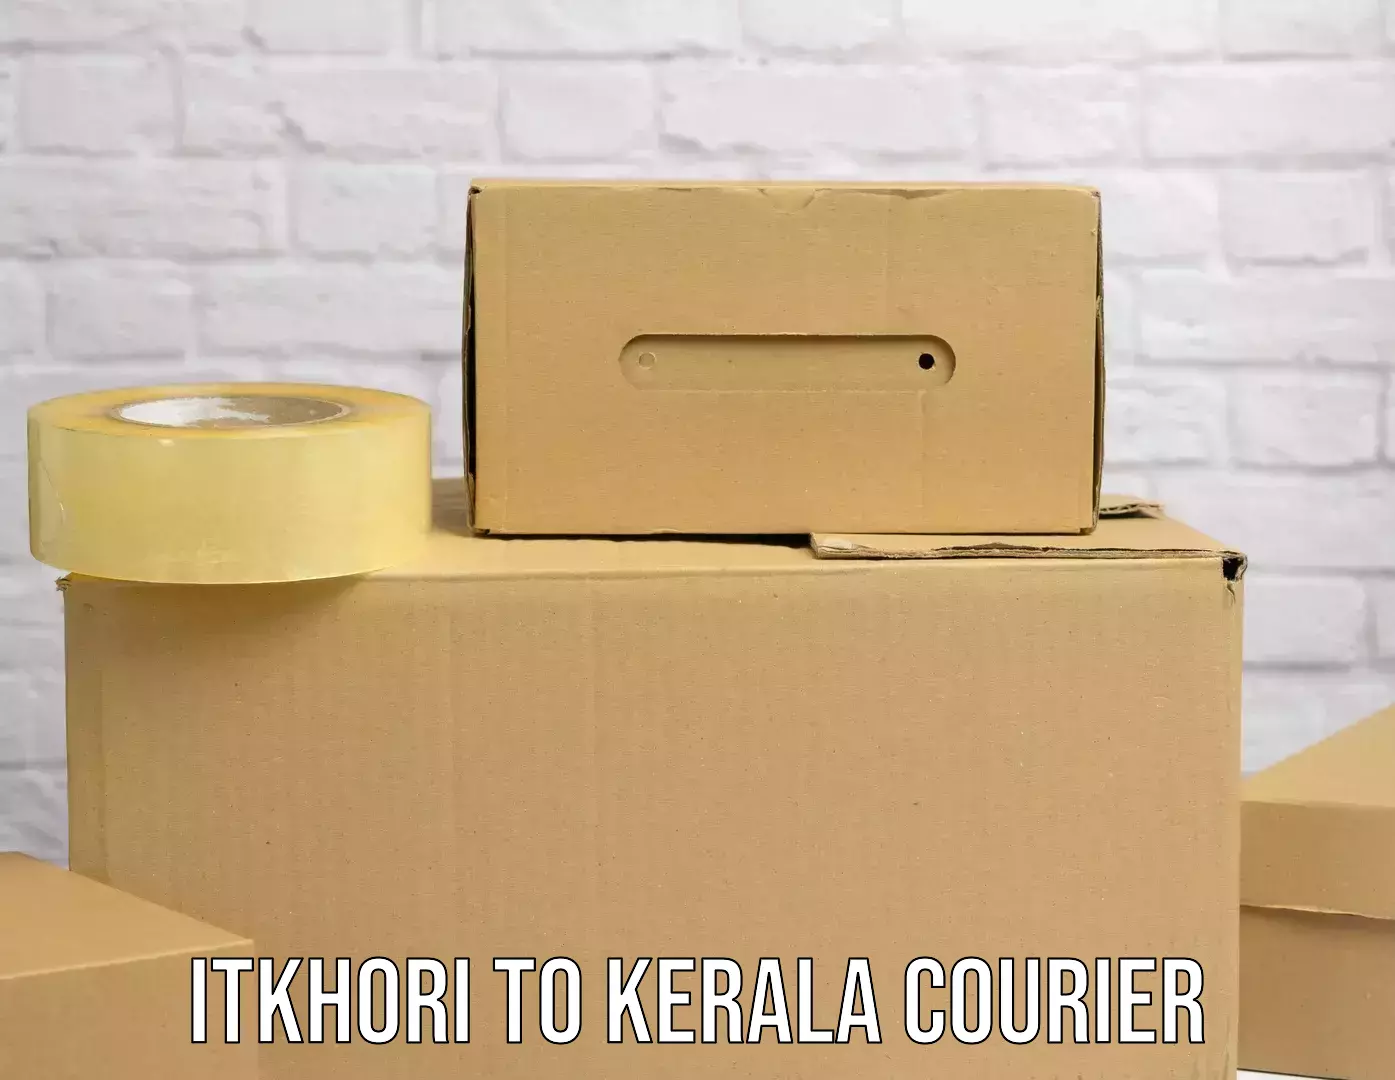 Personalized courier experiences Itkhori to Kuttikol